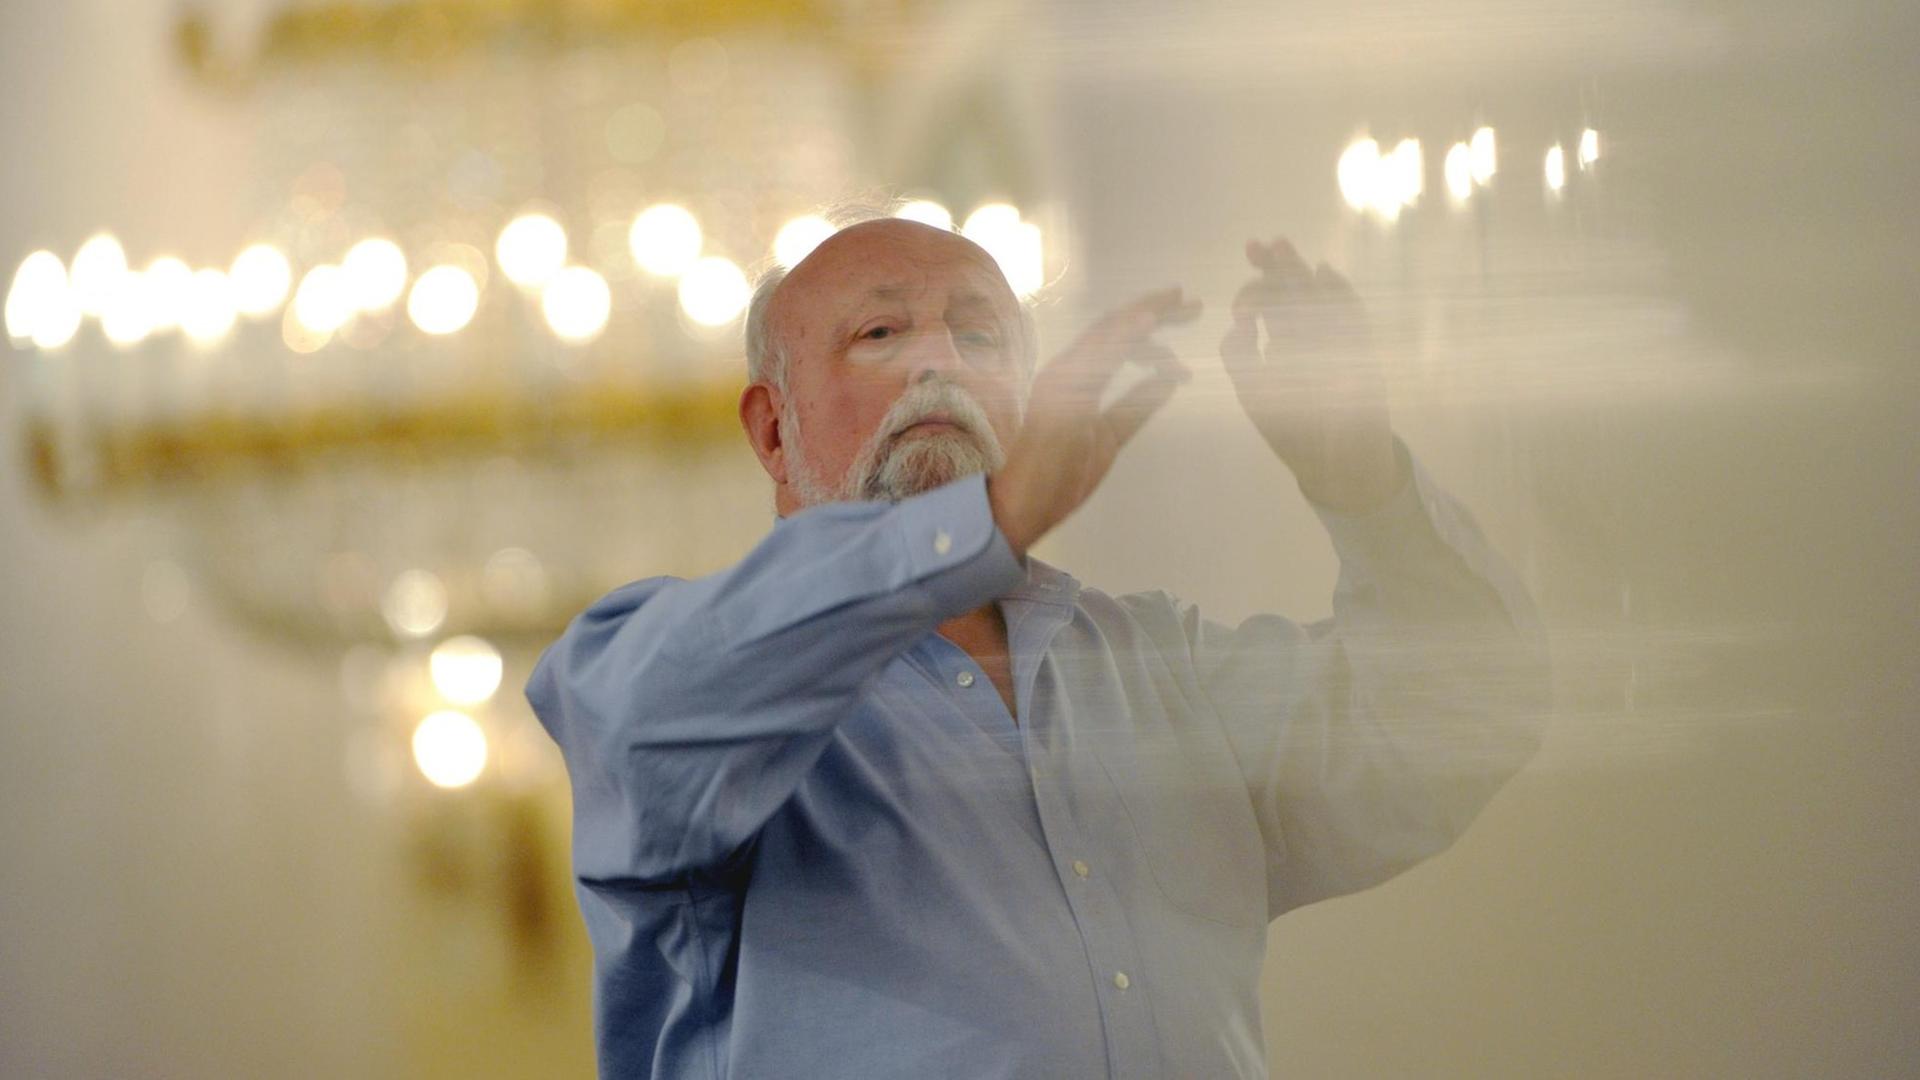 Krzysztof Penderecki steht in einem hell erleuchteten Saal und dirigiert.